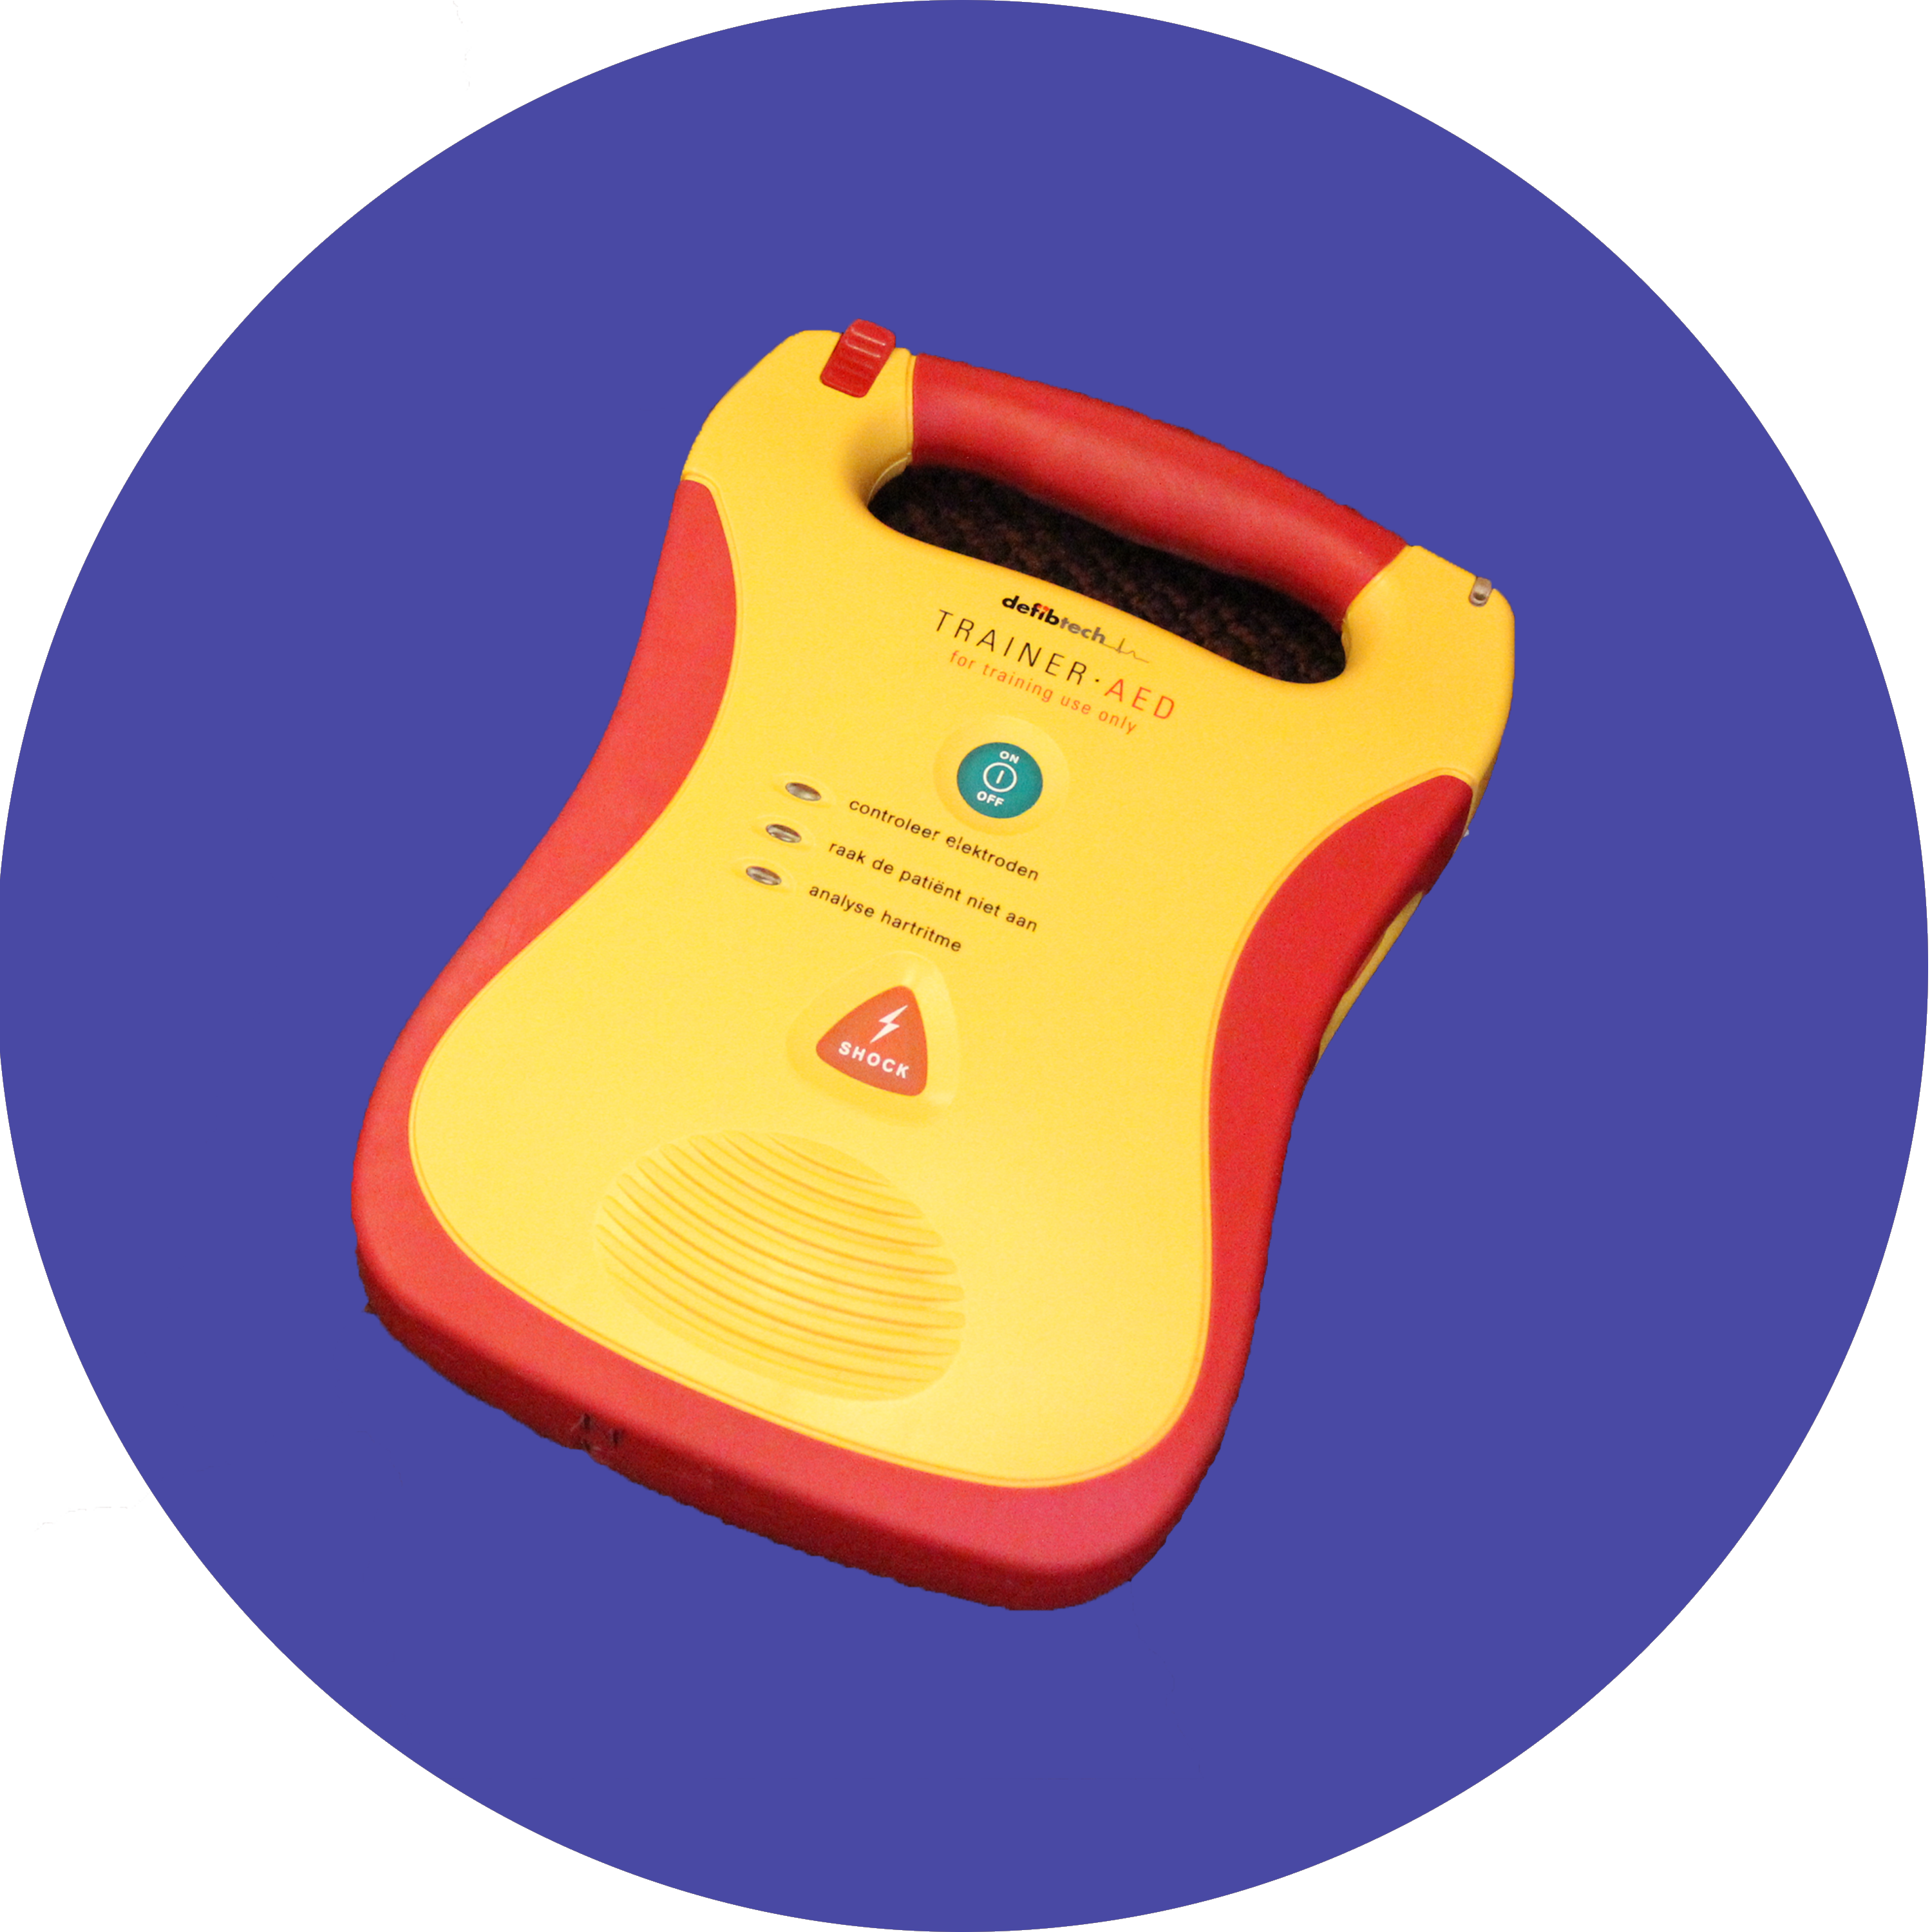 De AED voor reanimatie